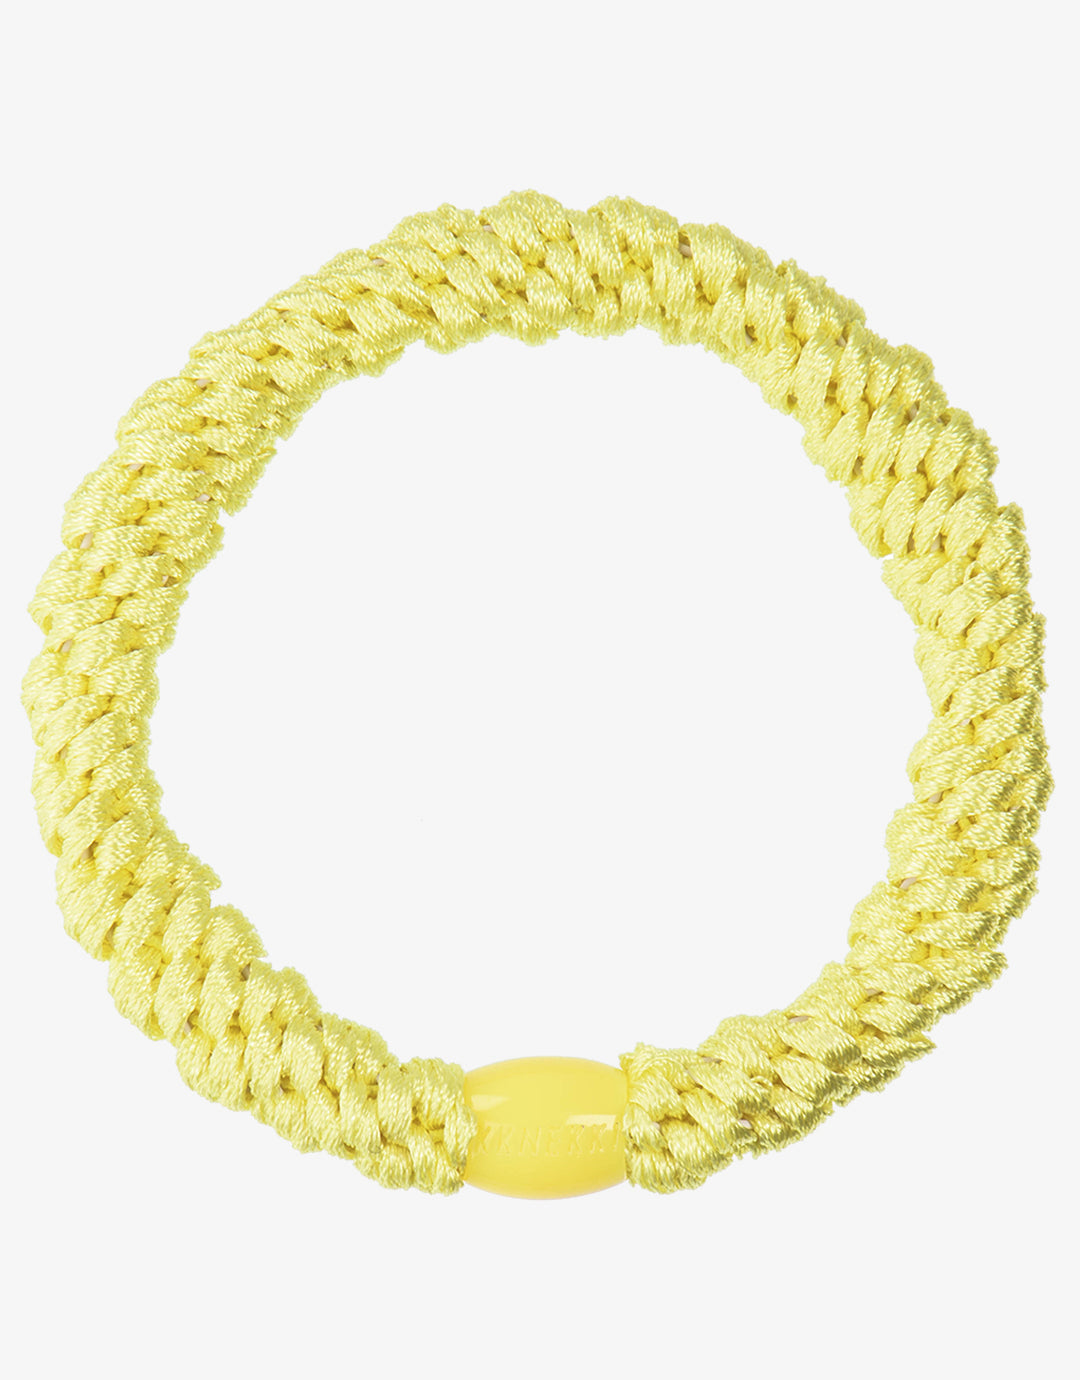 Original Hair Tie - Lemon - Simply Beach UK